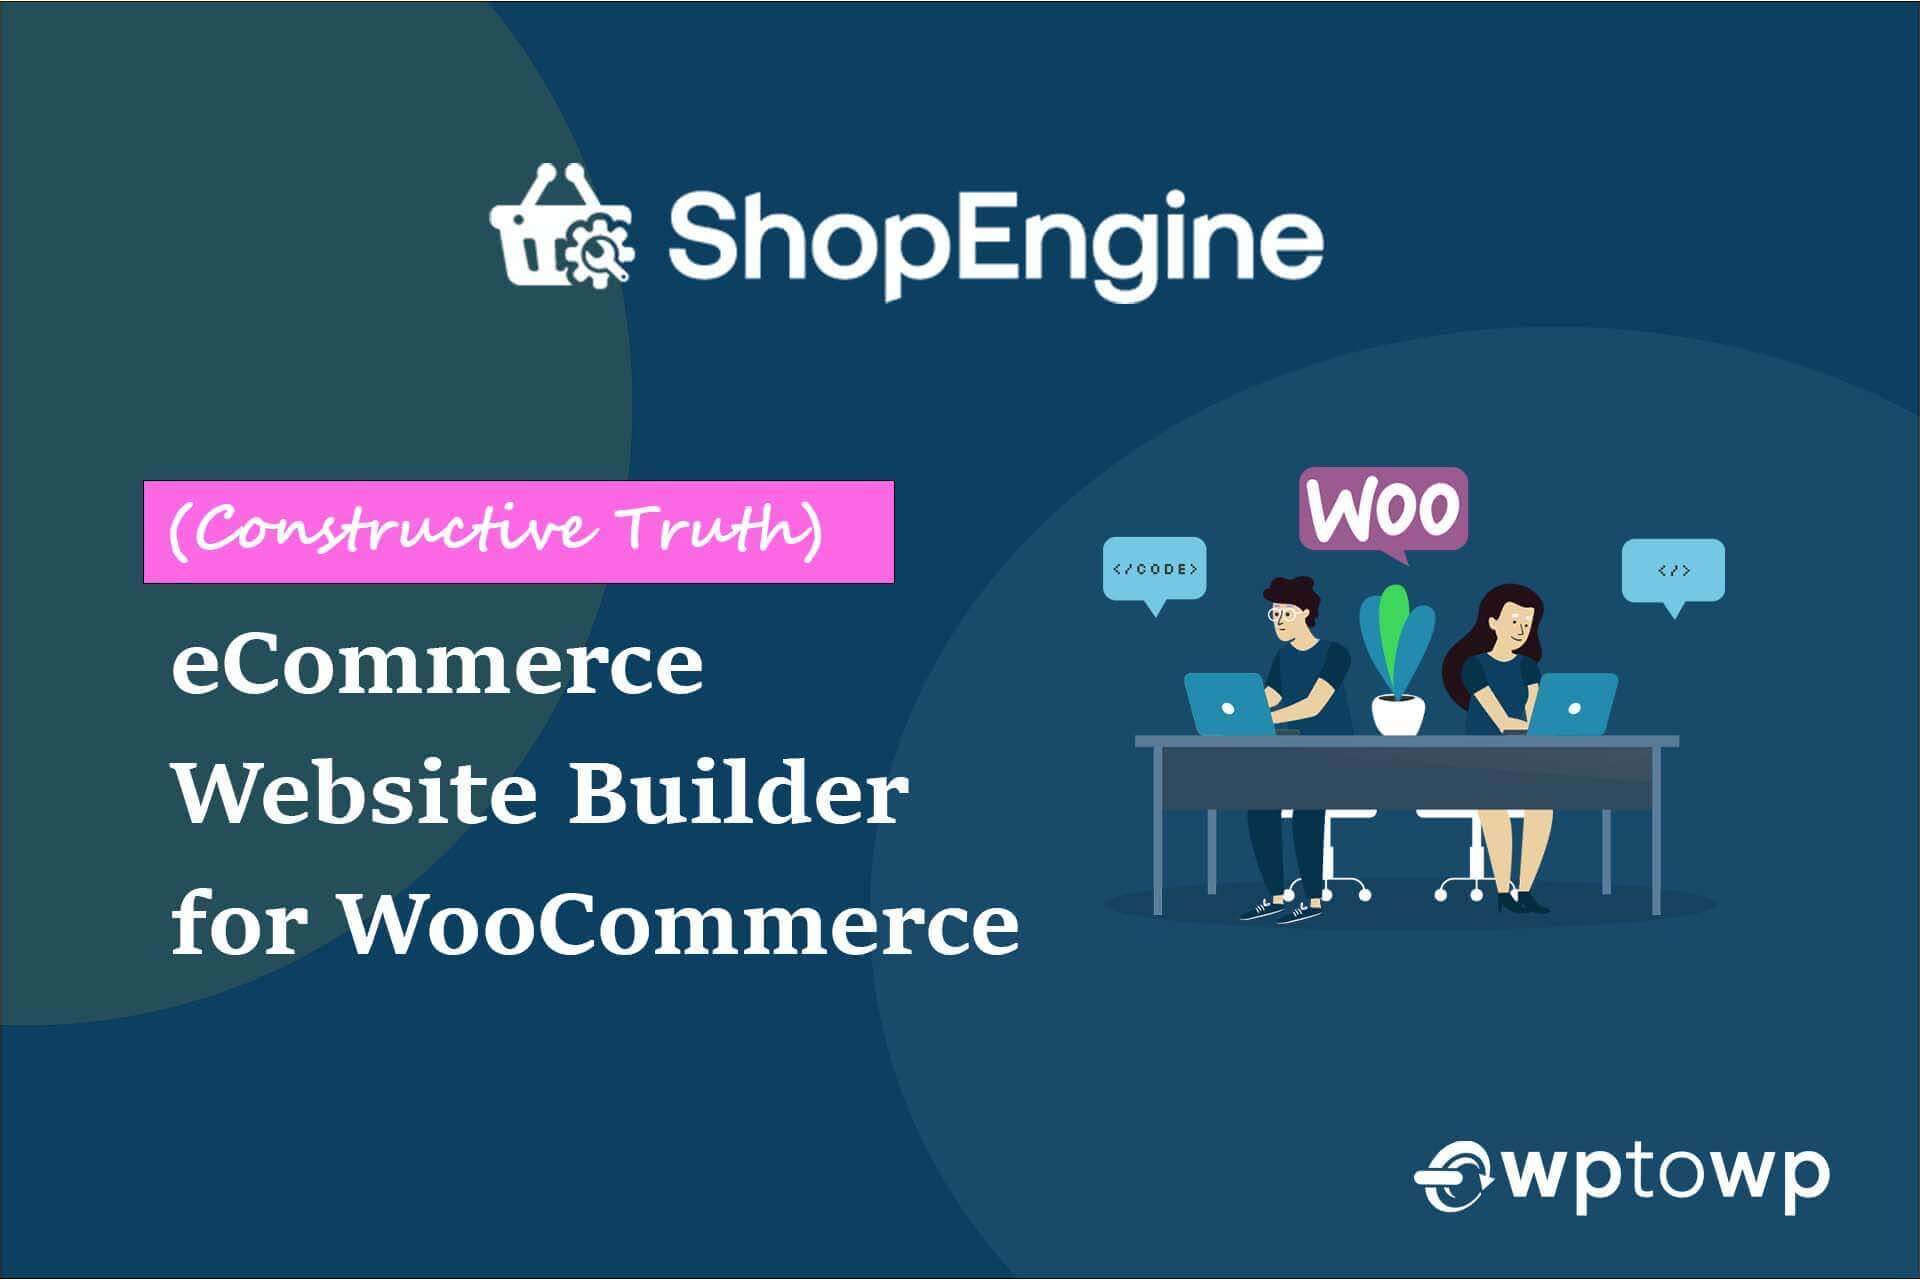 ShopEngine eCommerce Website Builder, wptowp